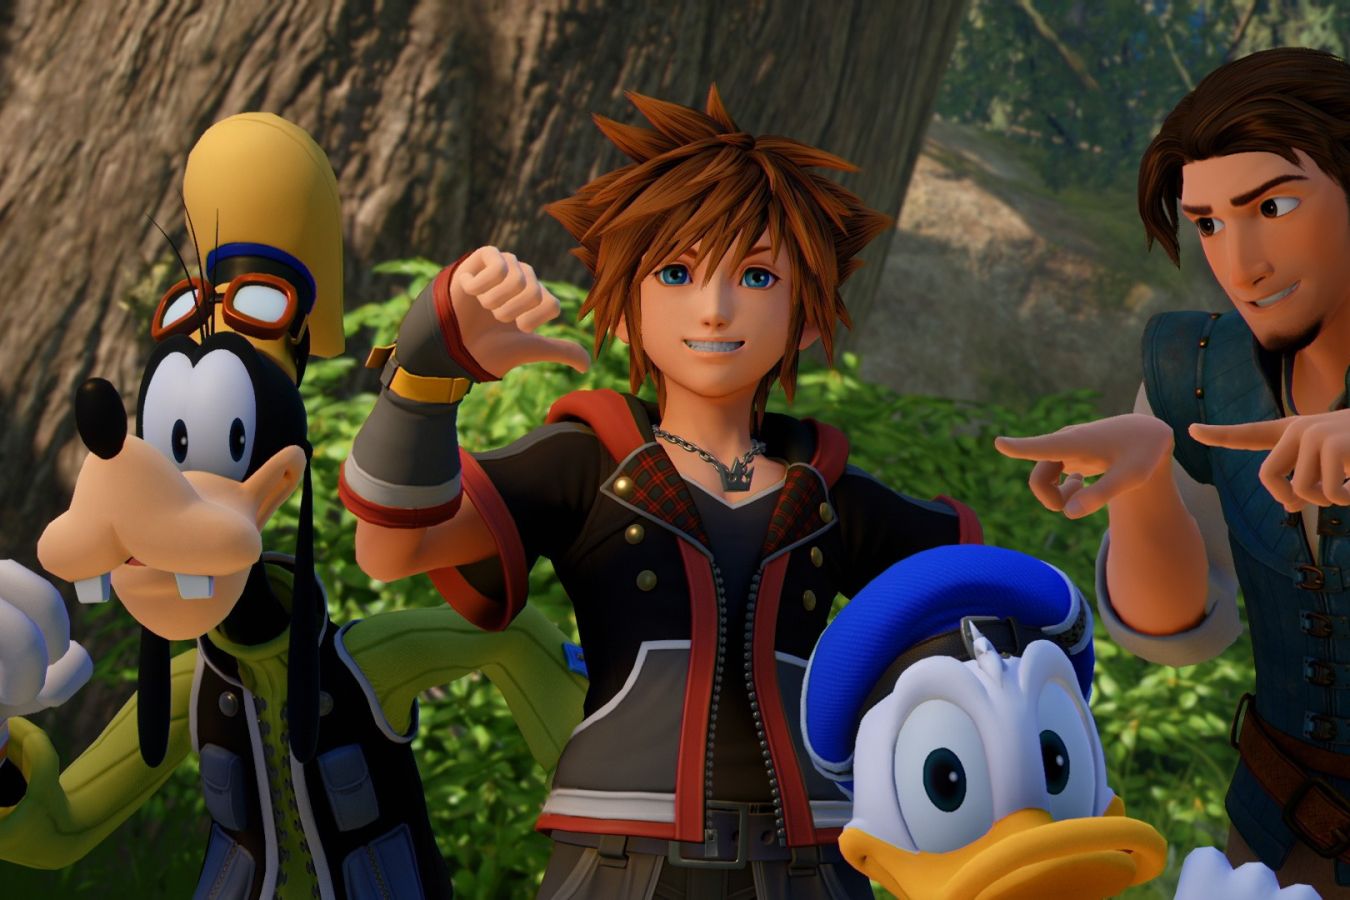 Вышел трейлер Kingdom Hearts для Steam  игры с героями Disney появятся там 13 июня